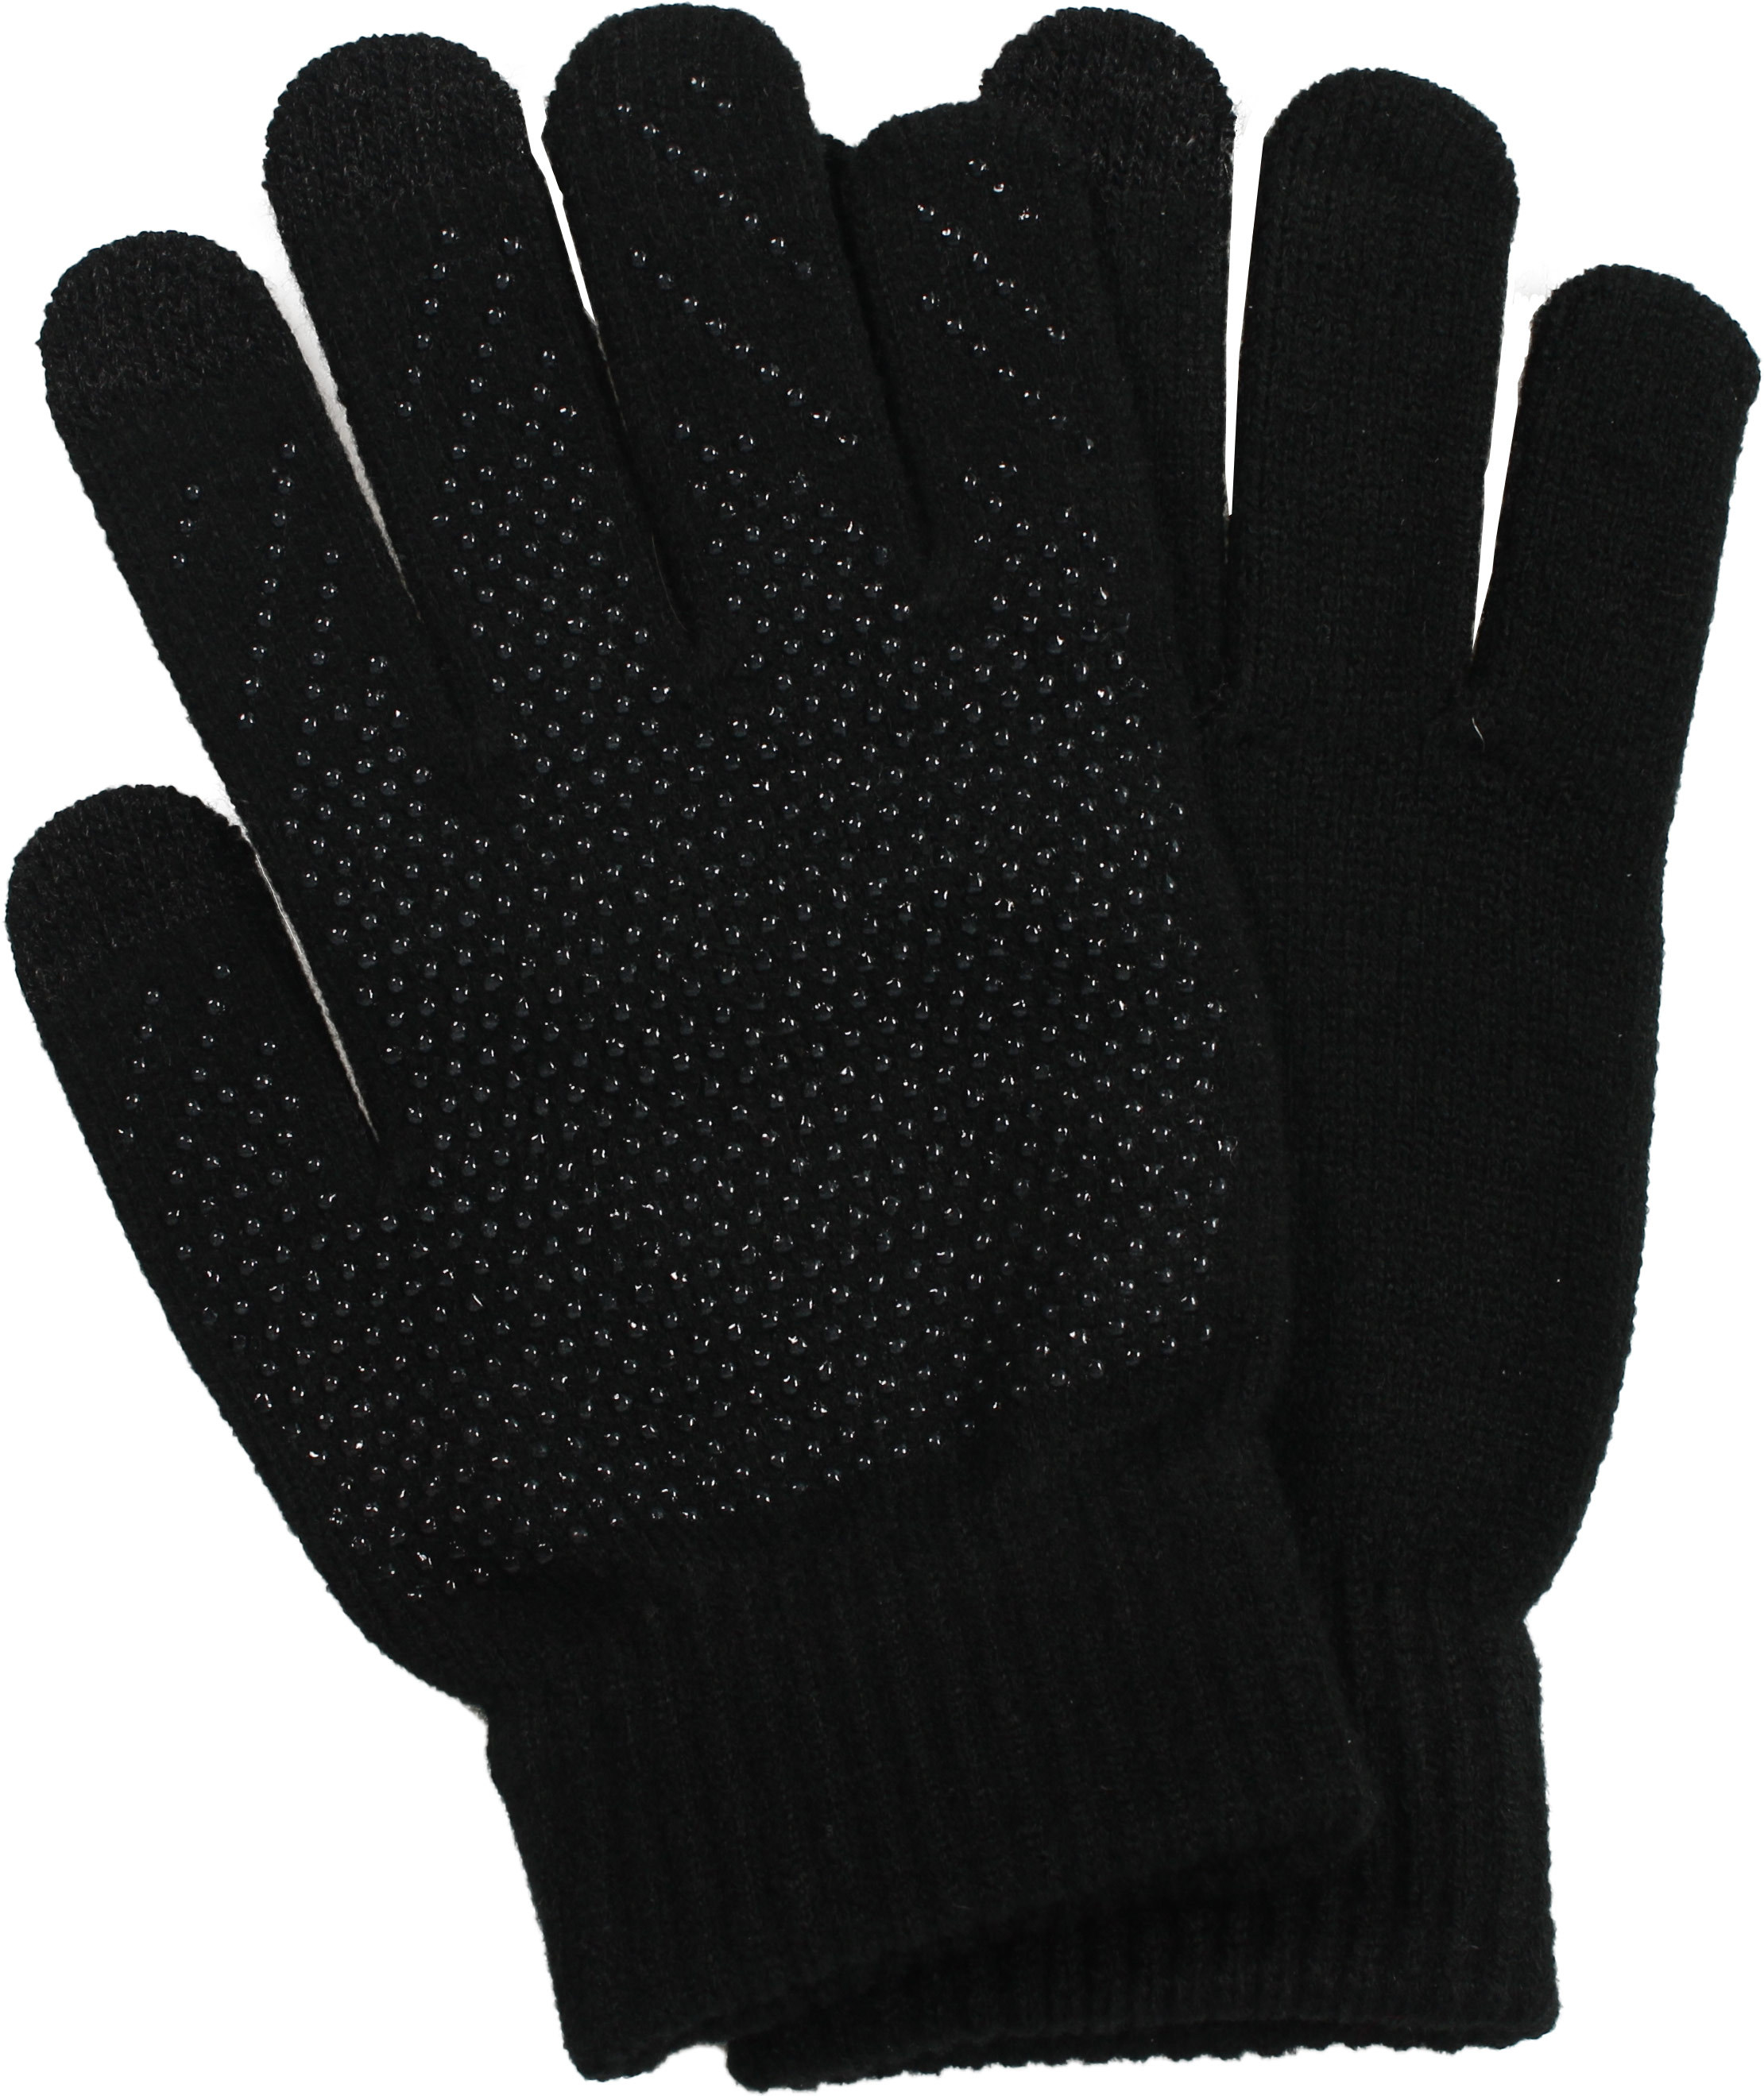 Restez protégé et connecté cet hiver avec ces gants tactiles à moins de 15  euros